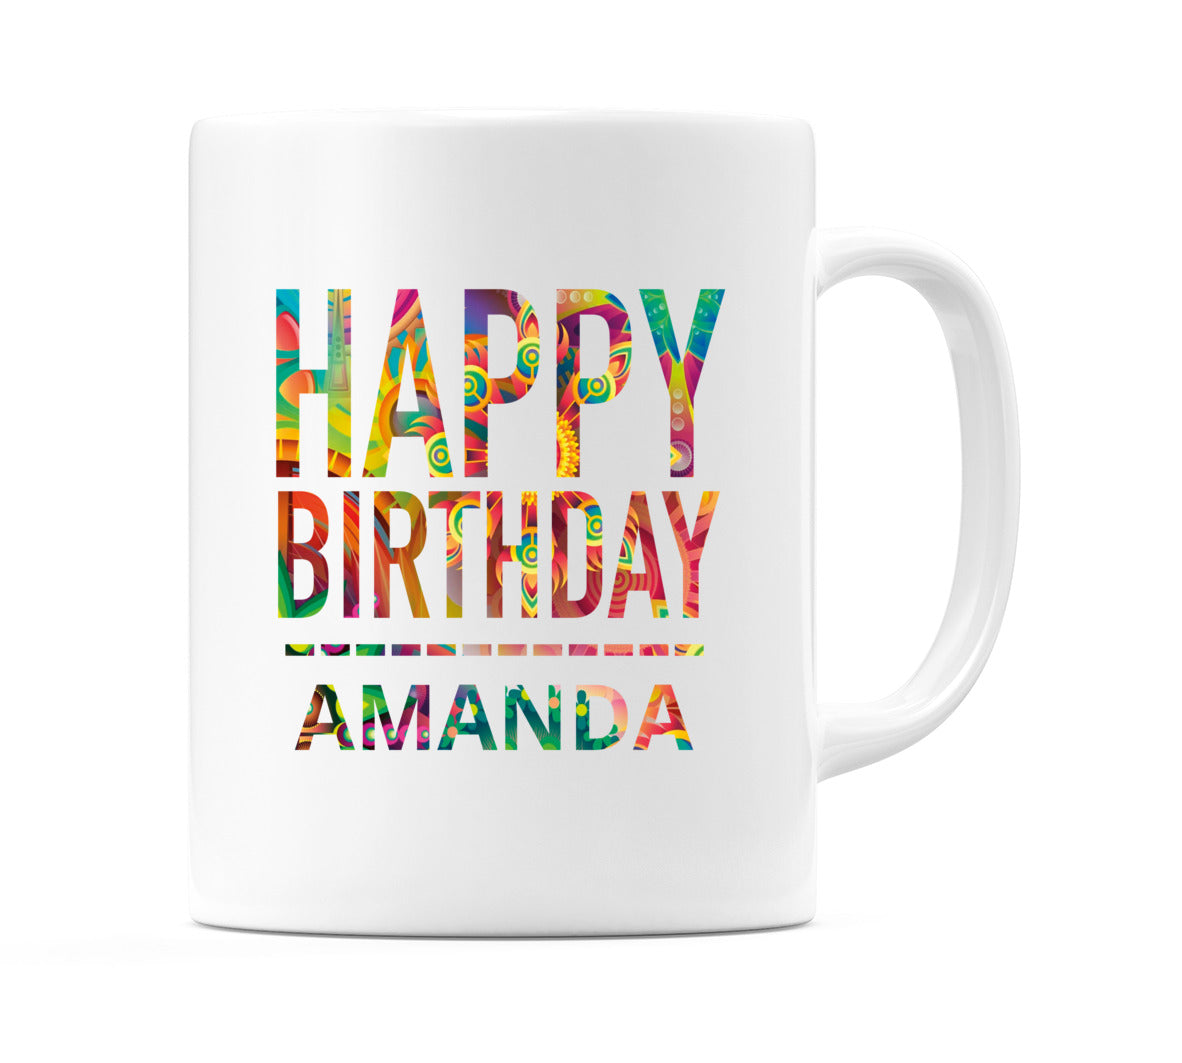 Happy Birthday Amanda (Tie Dye Effect) Mug Cup by WeDoMugs